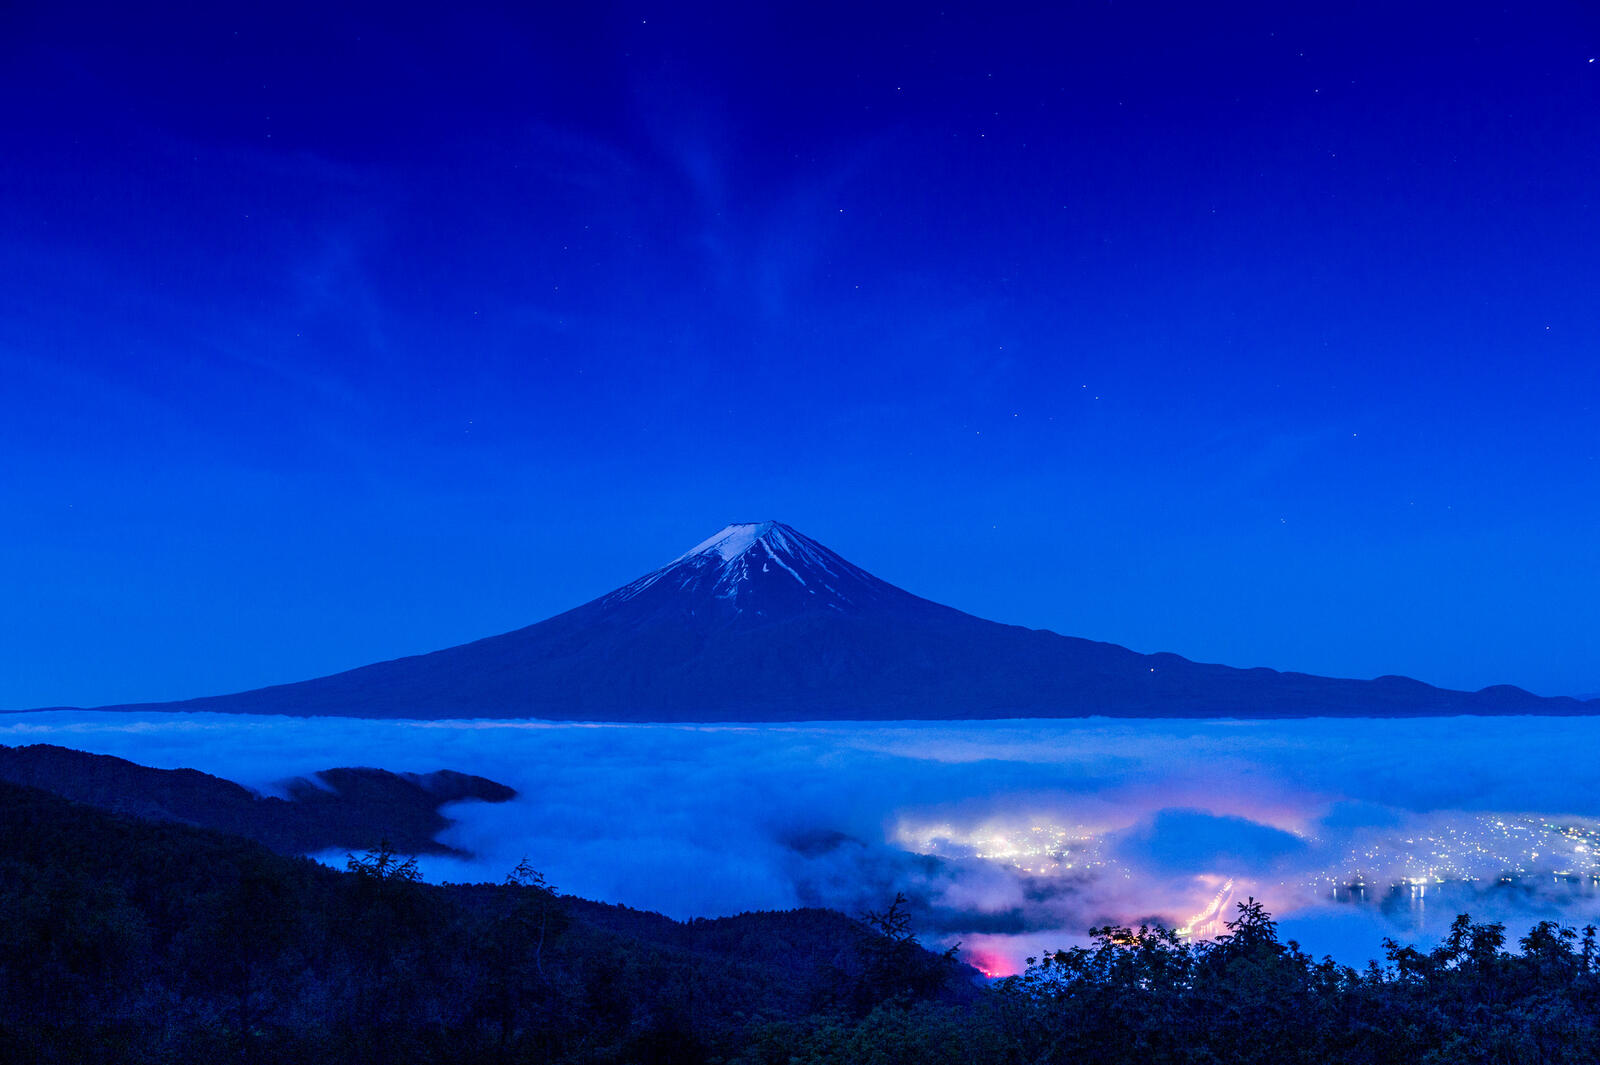 桌面上的壁纸富士山 山区 自然